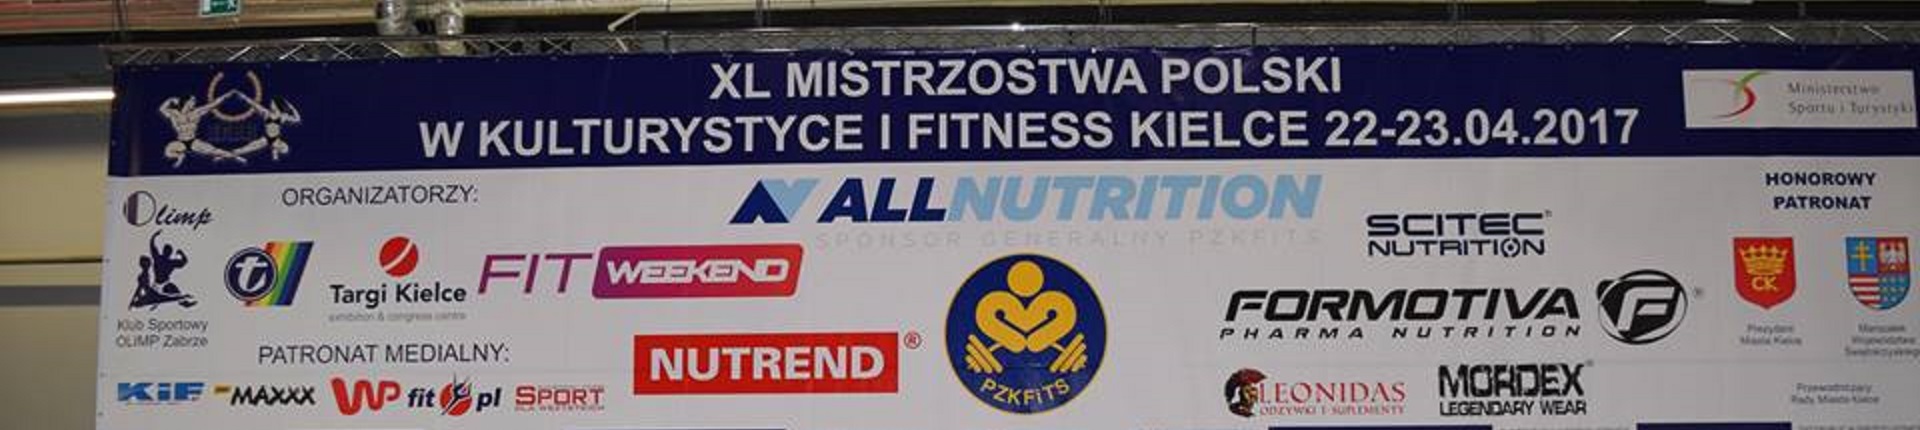 22-23.04.2017 XL Mistrzostwa Polski w Kulturystyce i Fitness - Kielce